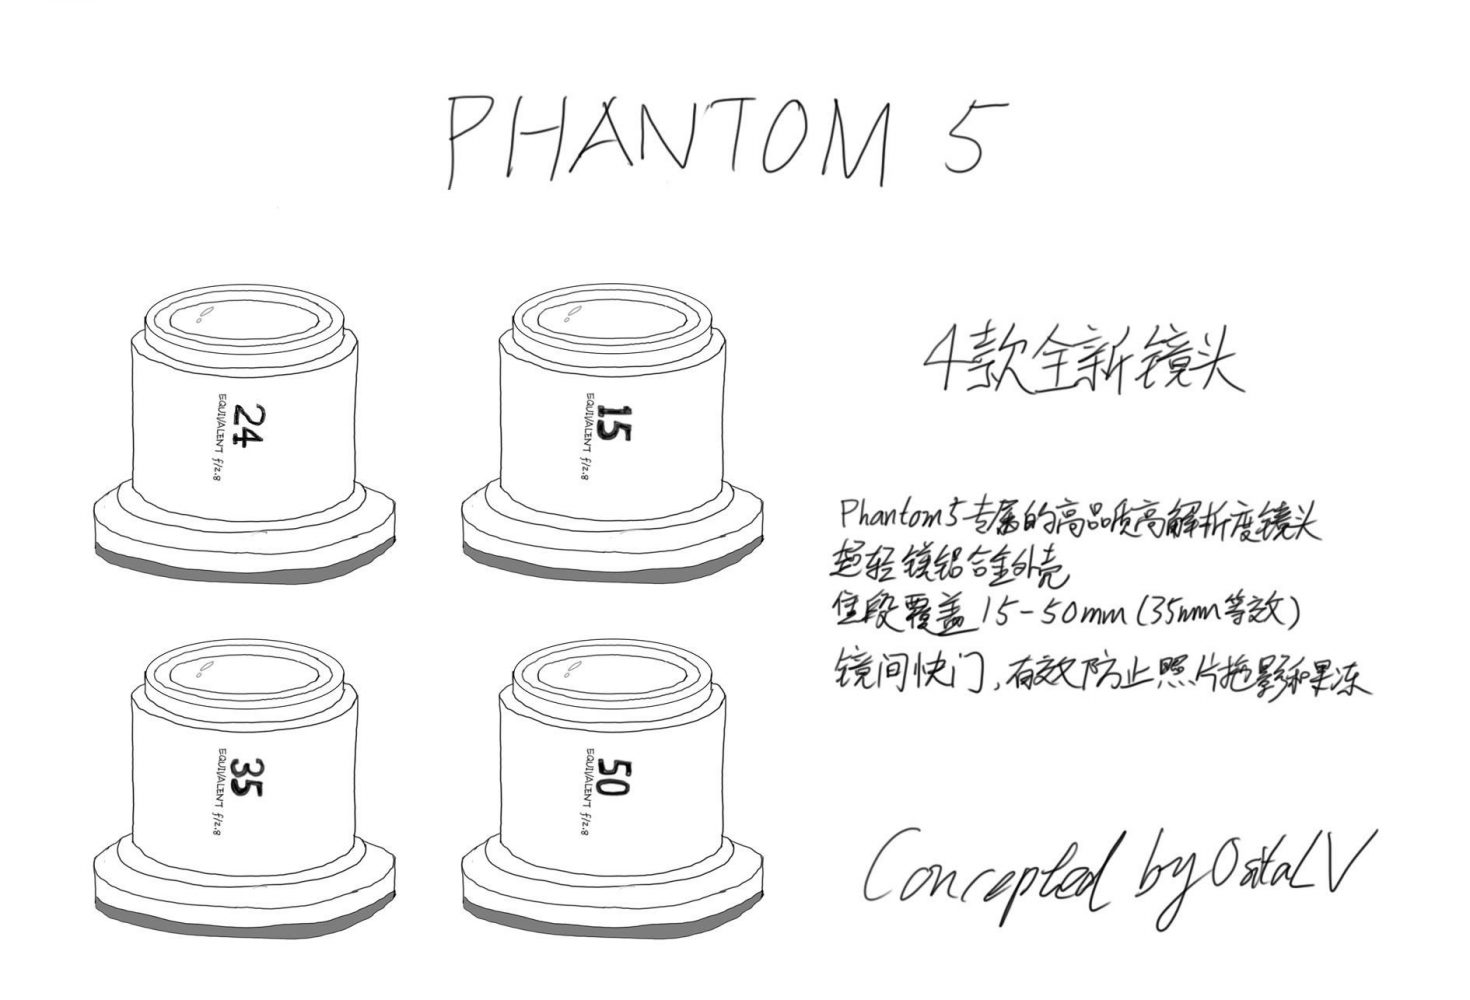 DJI Phantom 5